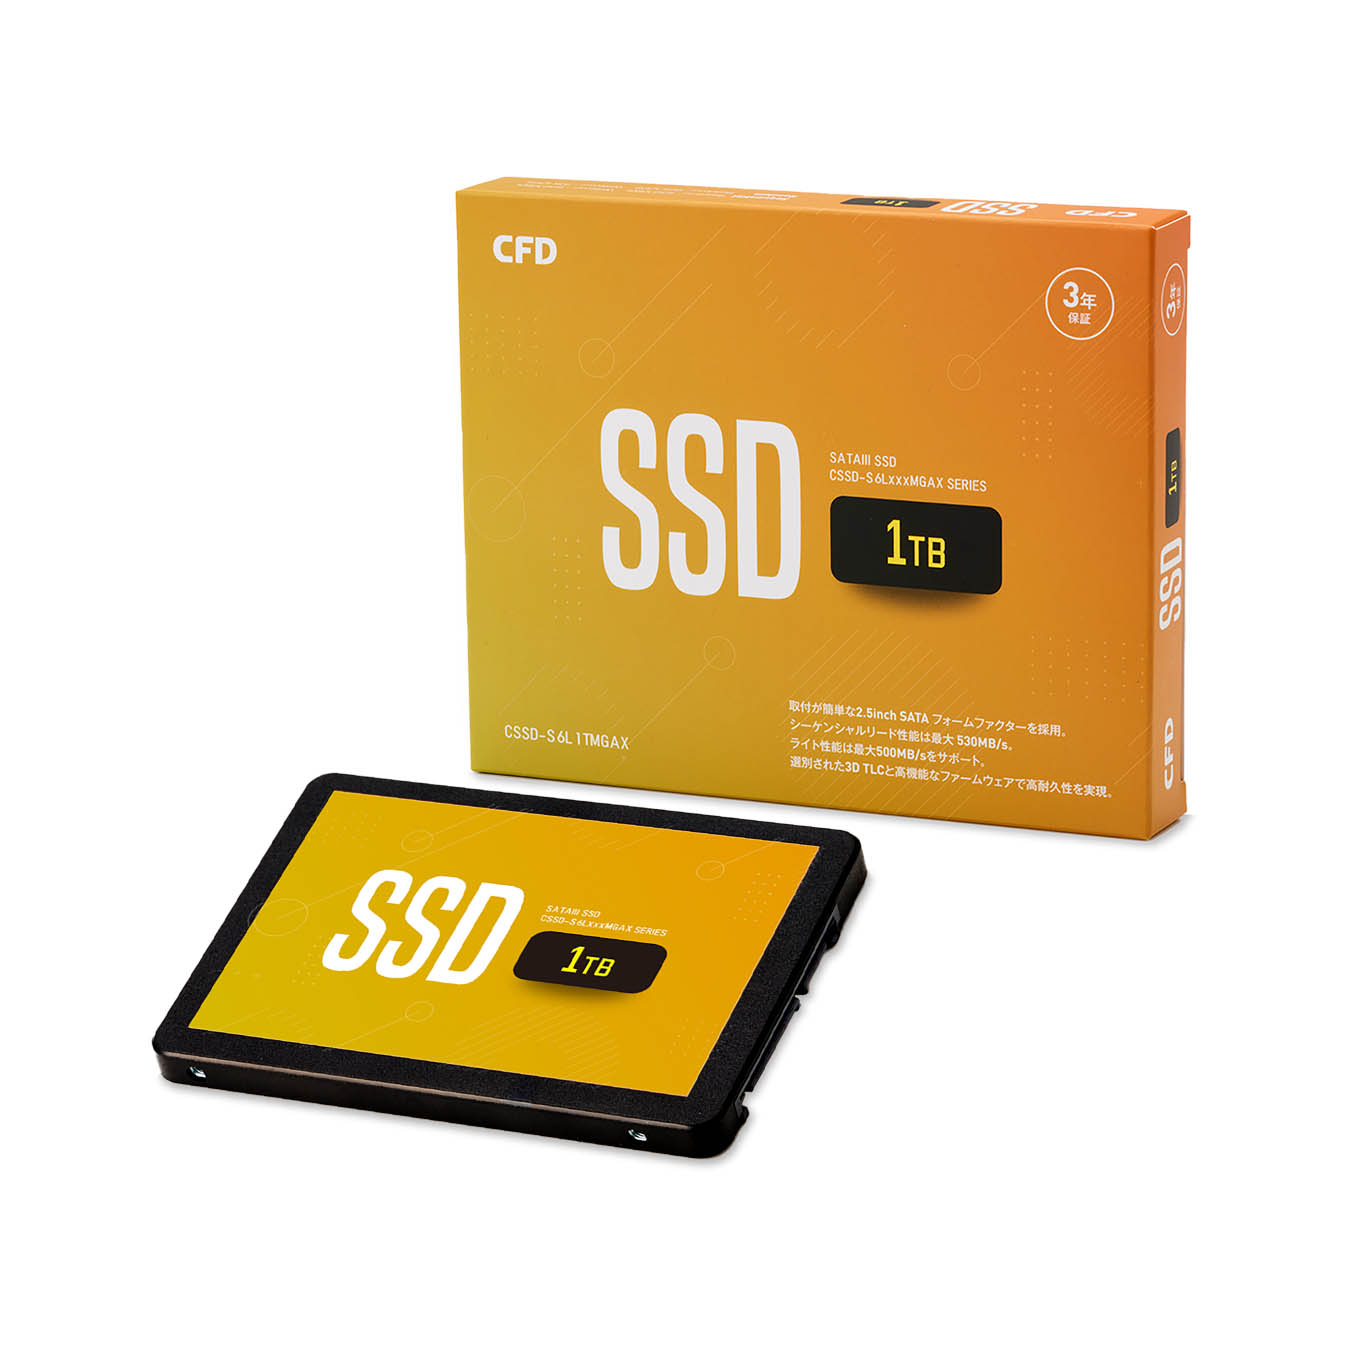 【SSD 1TB】安心の高品質 CFD販売 MGAXシリーズ 3